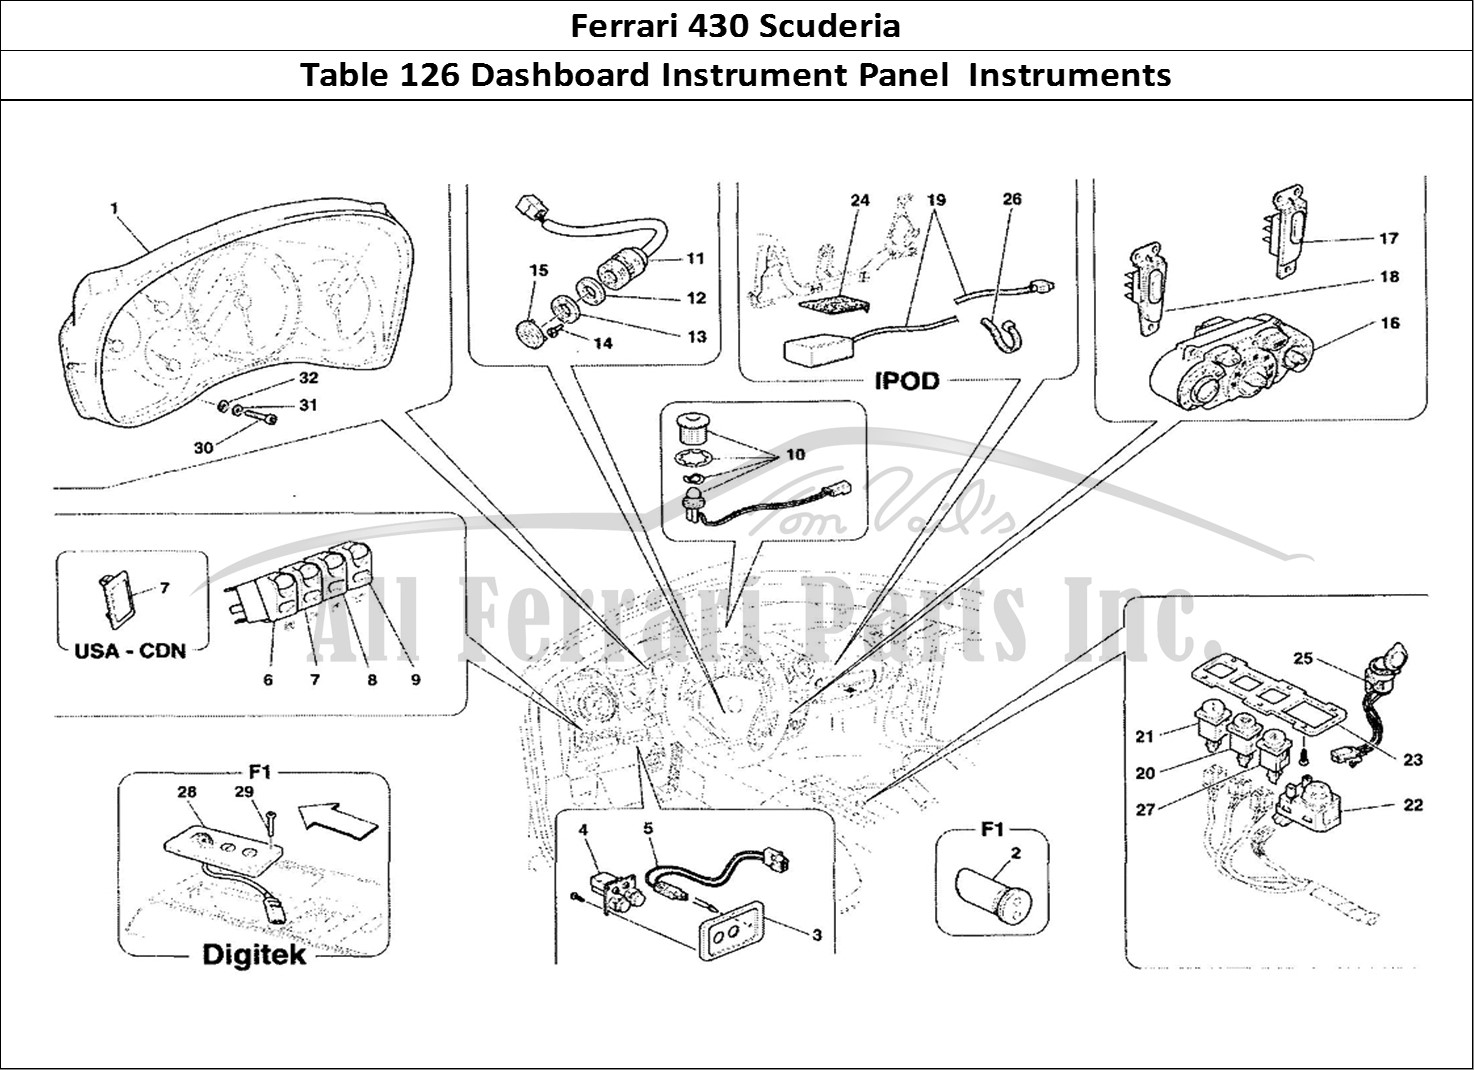 Ferrari Parts Ferrari 430 Scuderia Page 126 Dashboard Instruments